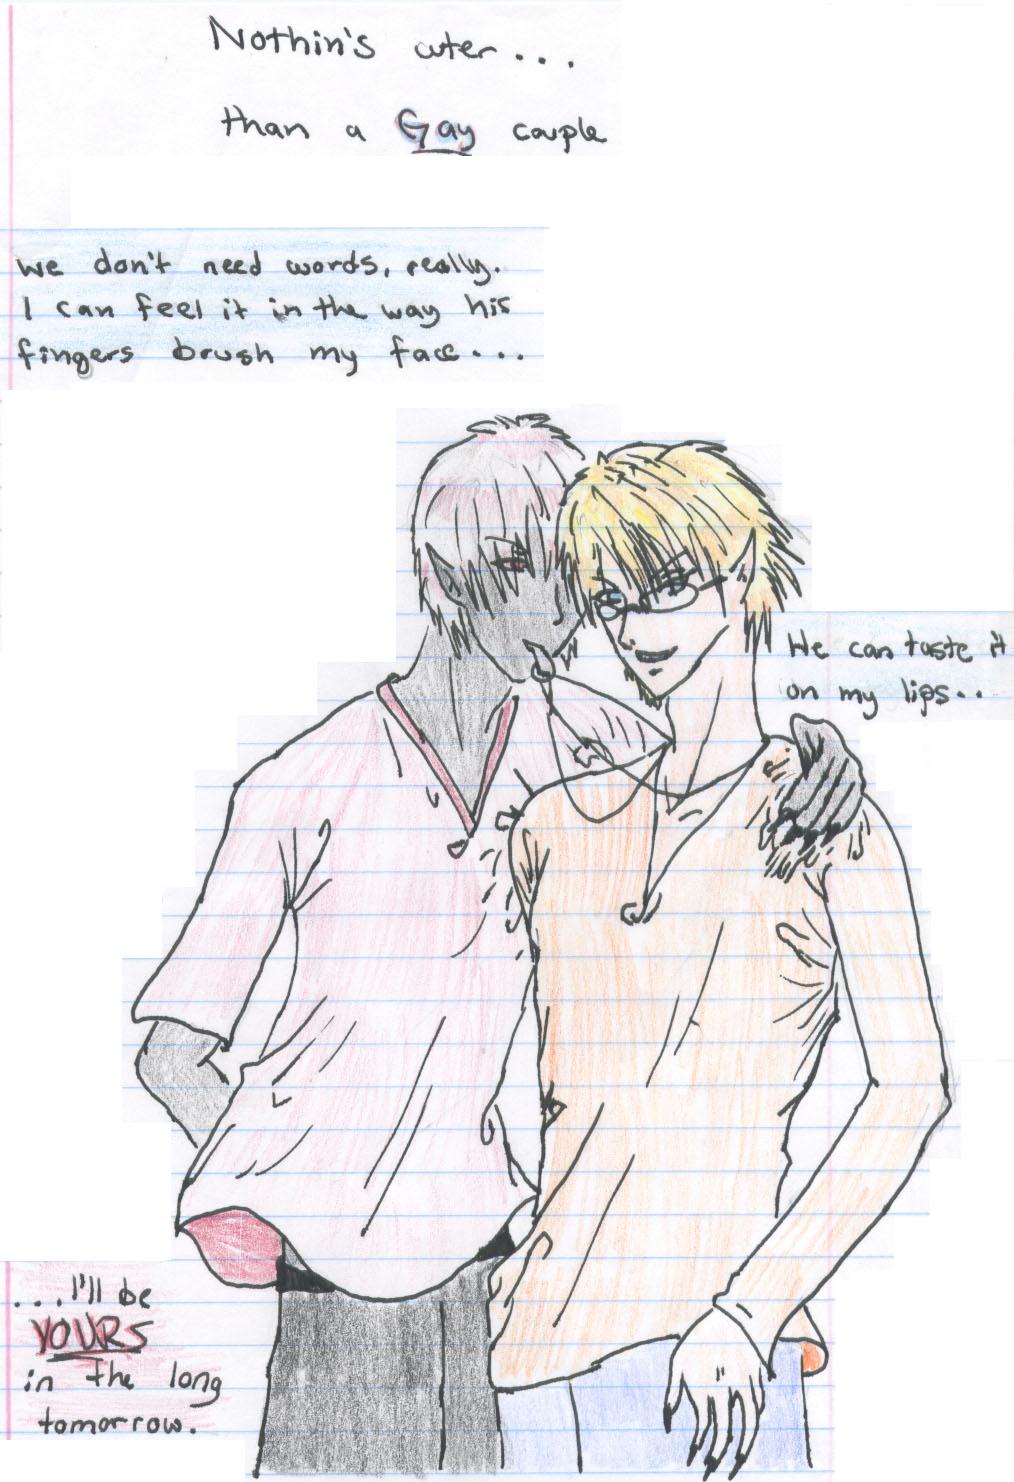 Nothin's Cuter Than a Gay Couple [Dalamar and Shan by CaptainCMorgan